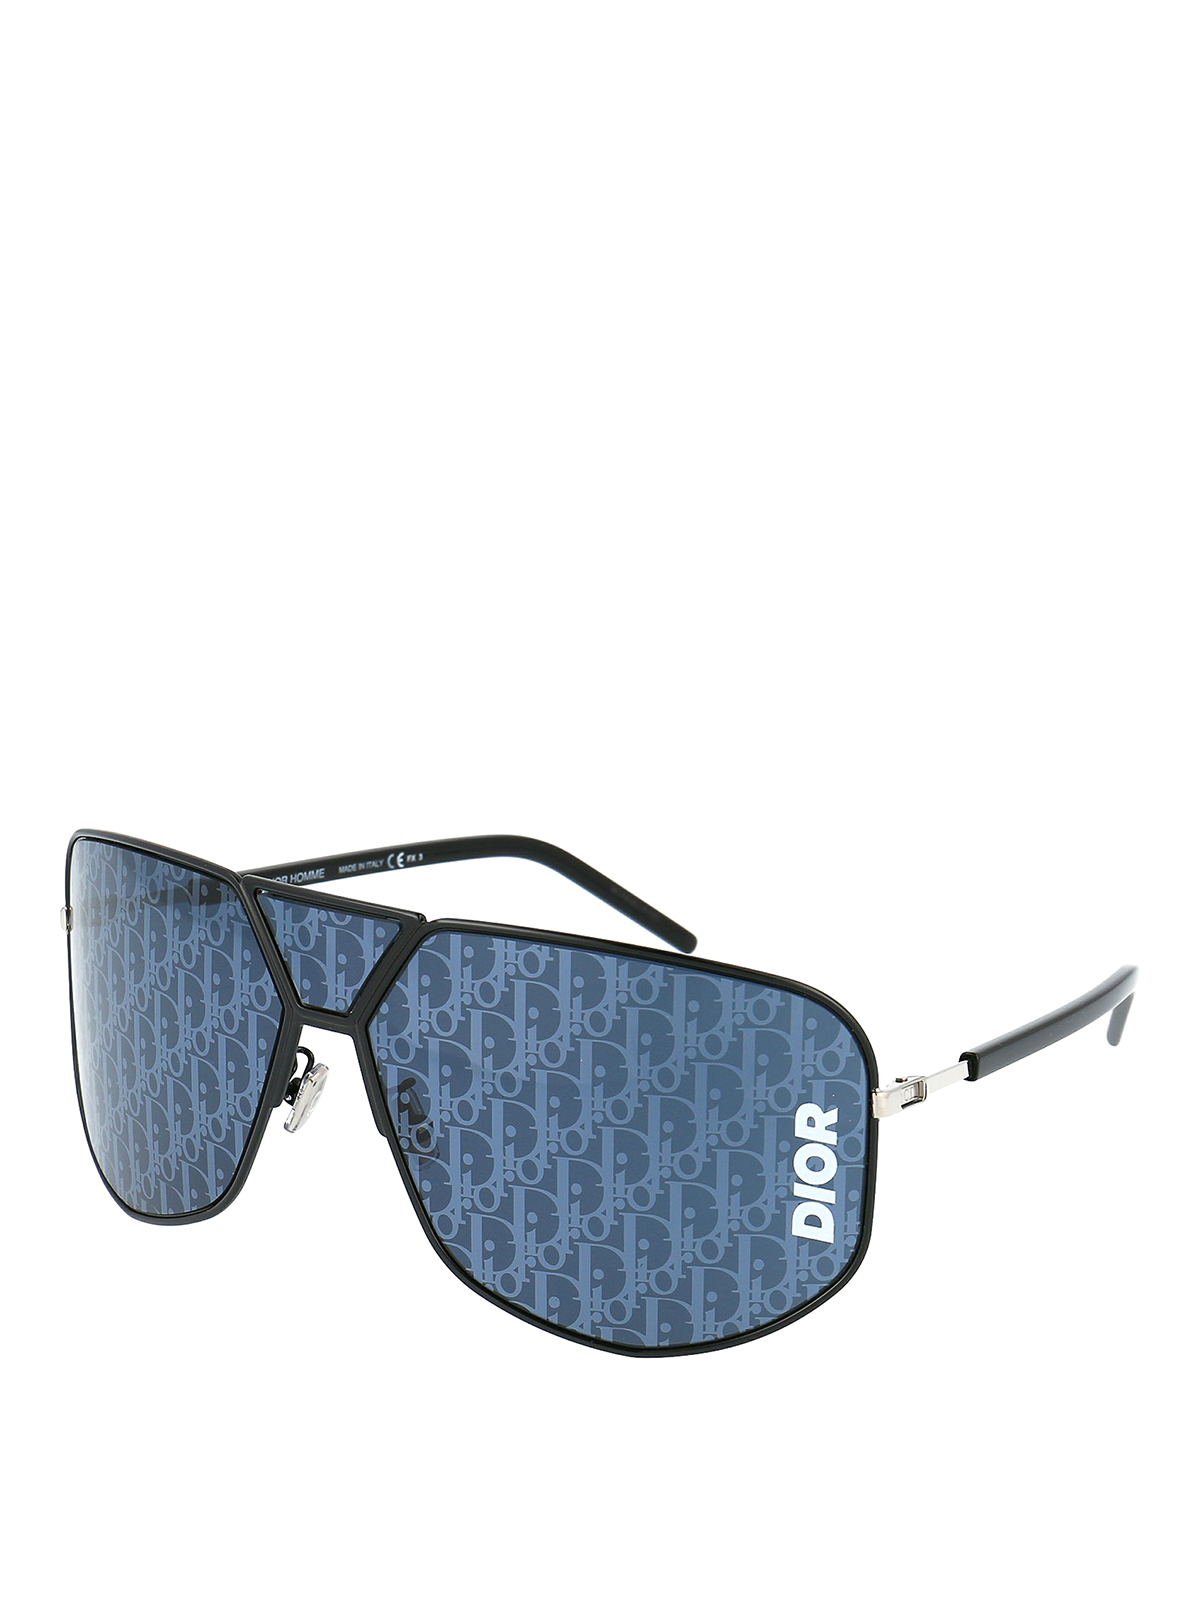 dior sunglasses logo